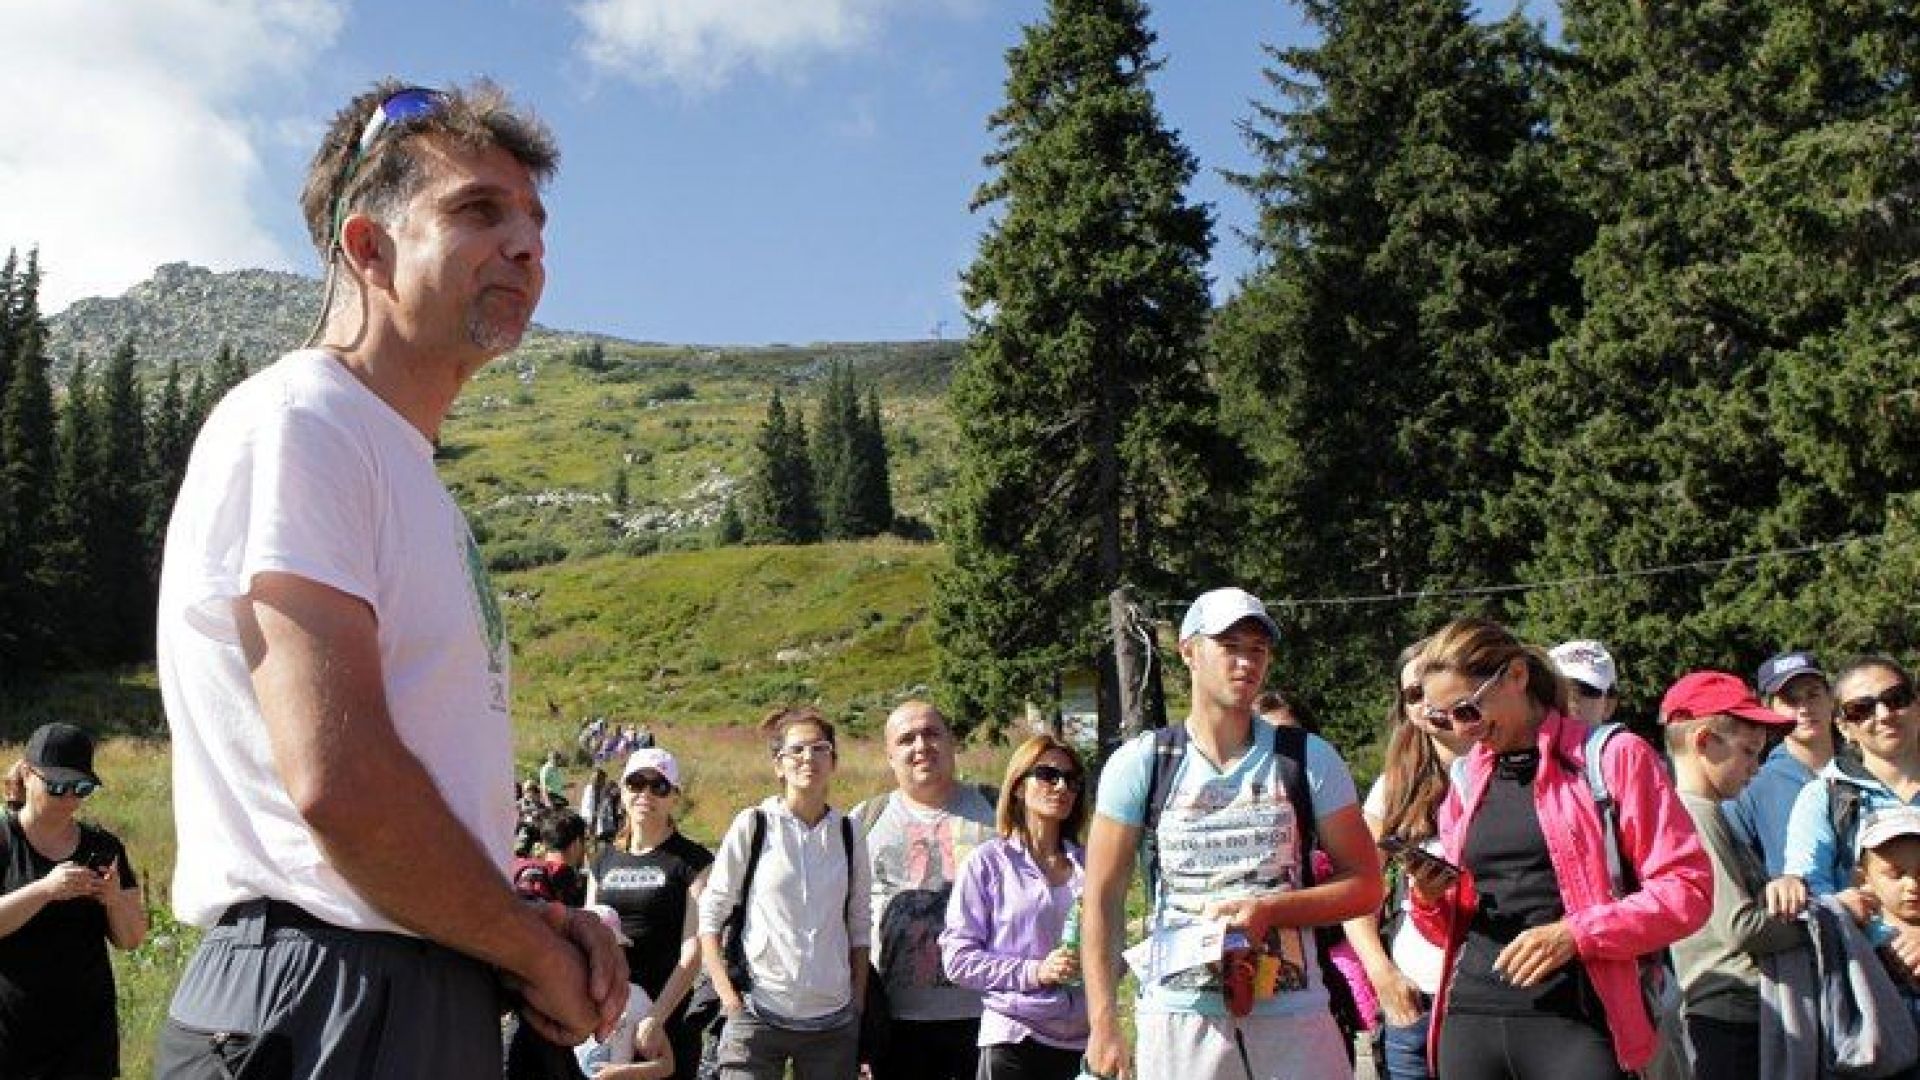 Д-р Петър Берон: Боян Петров не само изкачва върхове, той изследва високата планина